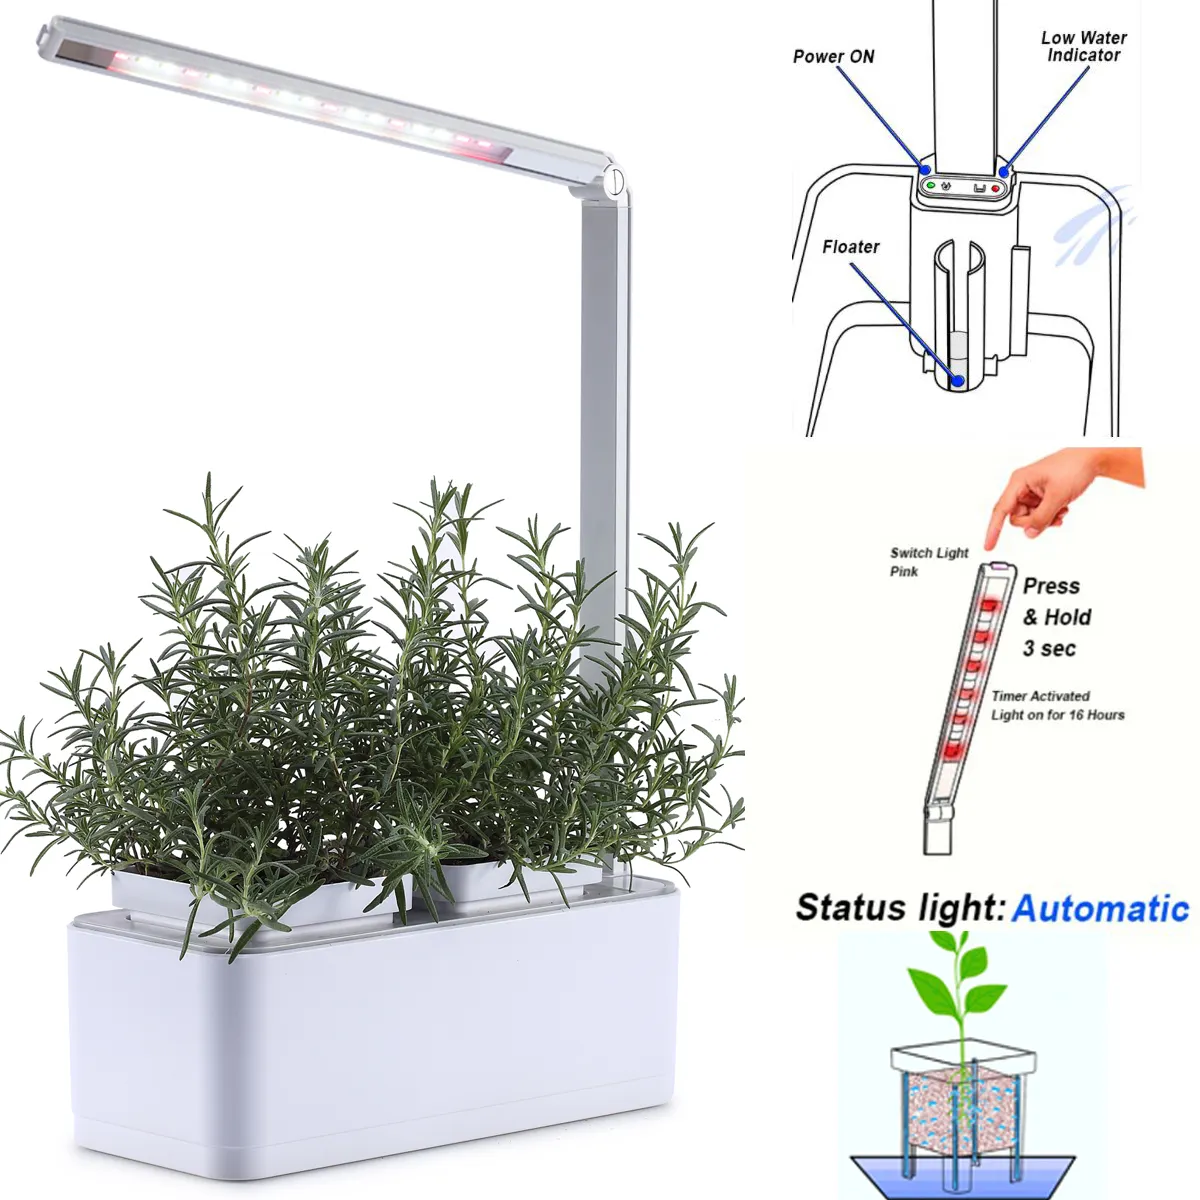 Microgreen hierba vegetal semillas kits de germinación sistema hidropónico DIY educativo auto riego DWC sistema de cultivo hidropónico